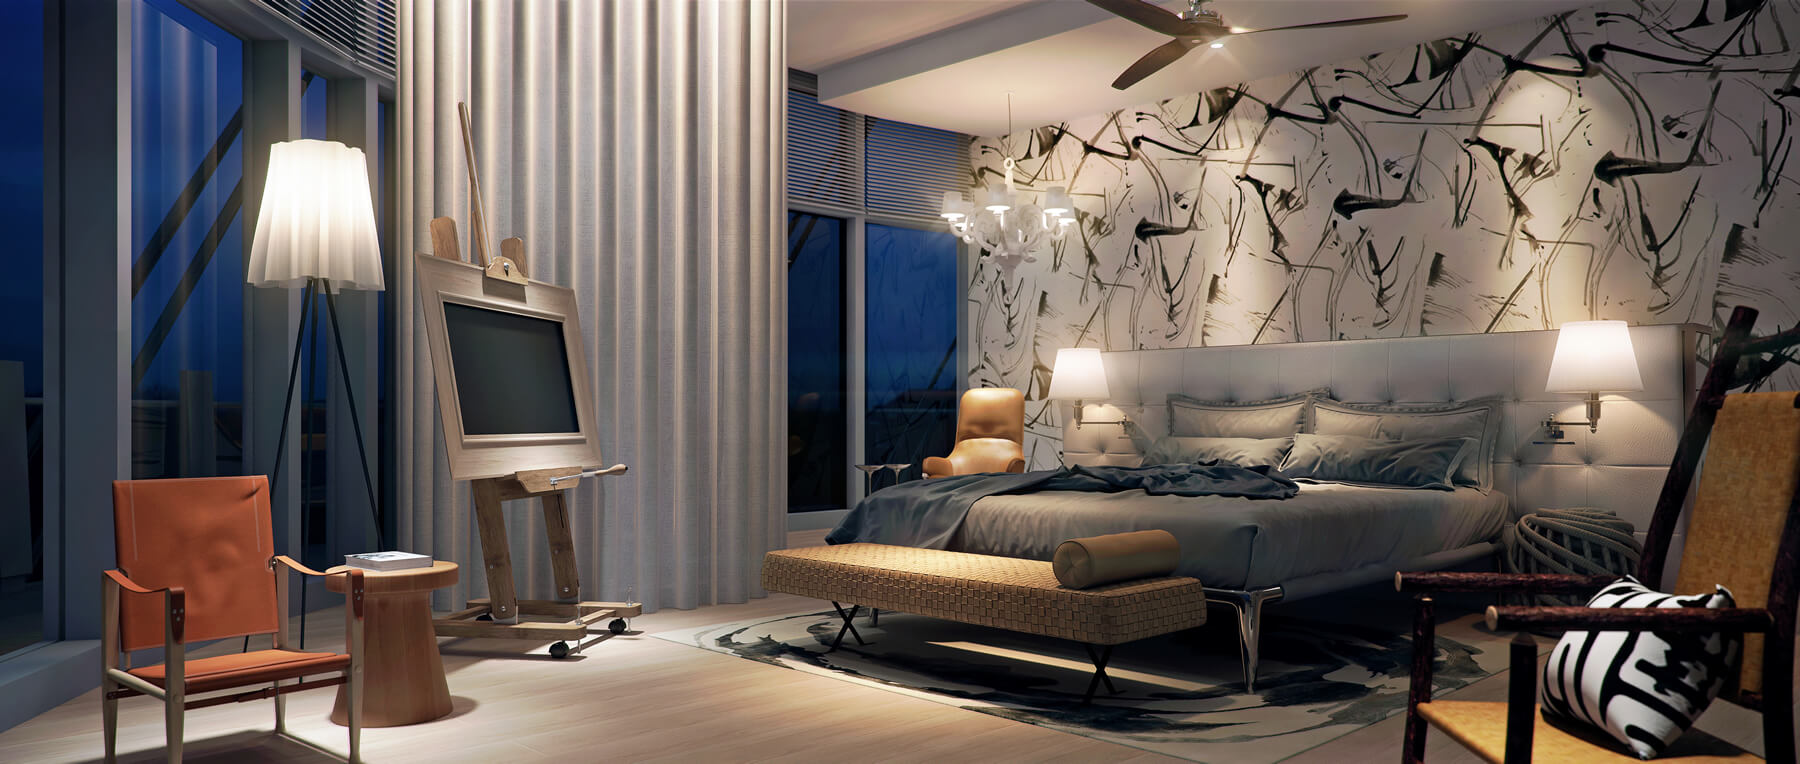 Image of designer bedroom in luxury homes in Sri Lanka